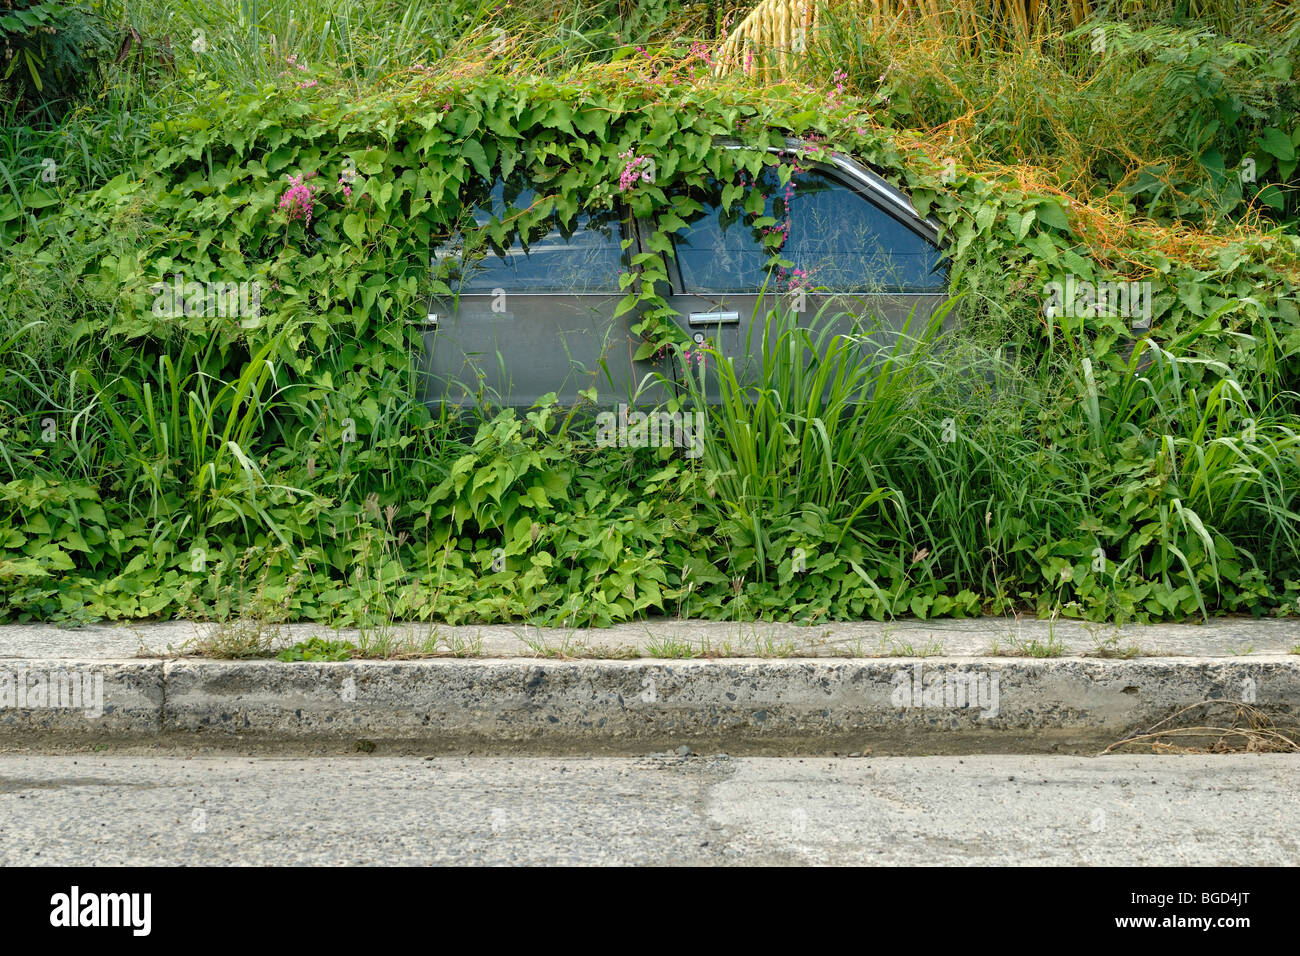 Location couvert de vignes et de mauvaises herbes, Christiansted, l'île Sainte-Croix, îles Vierges américaines, United States Banque D'Images